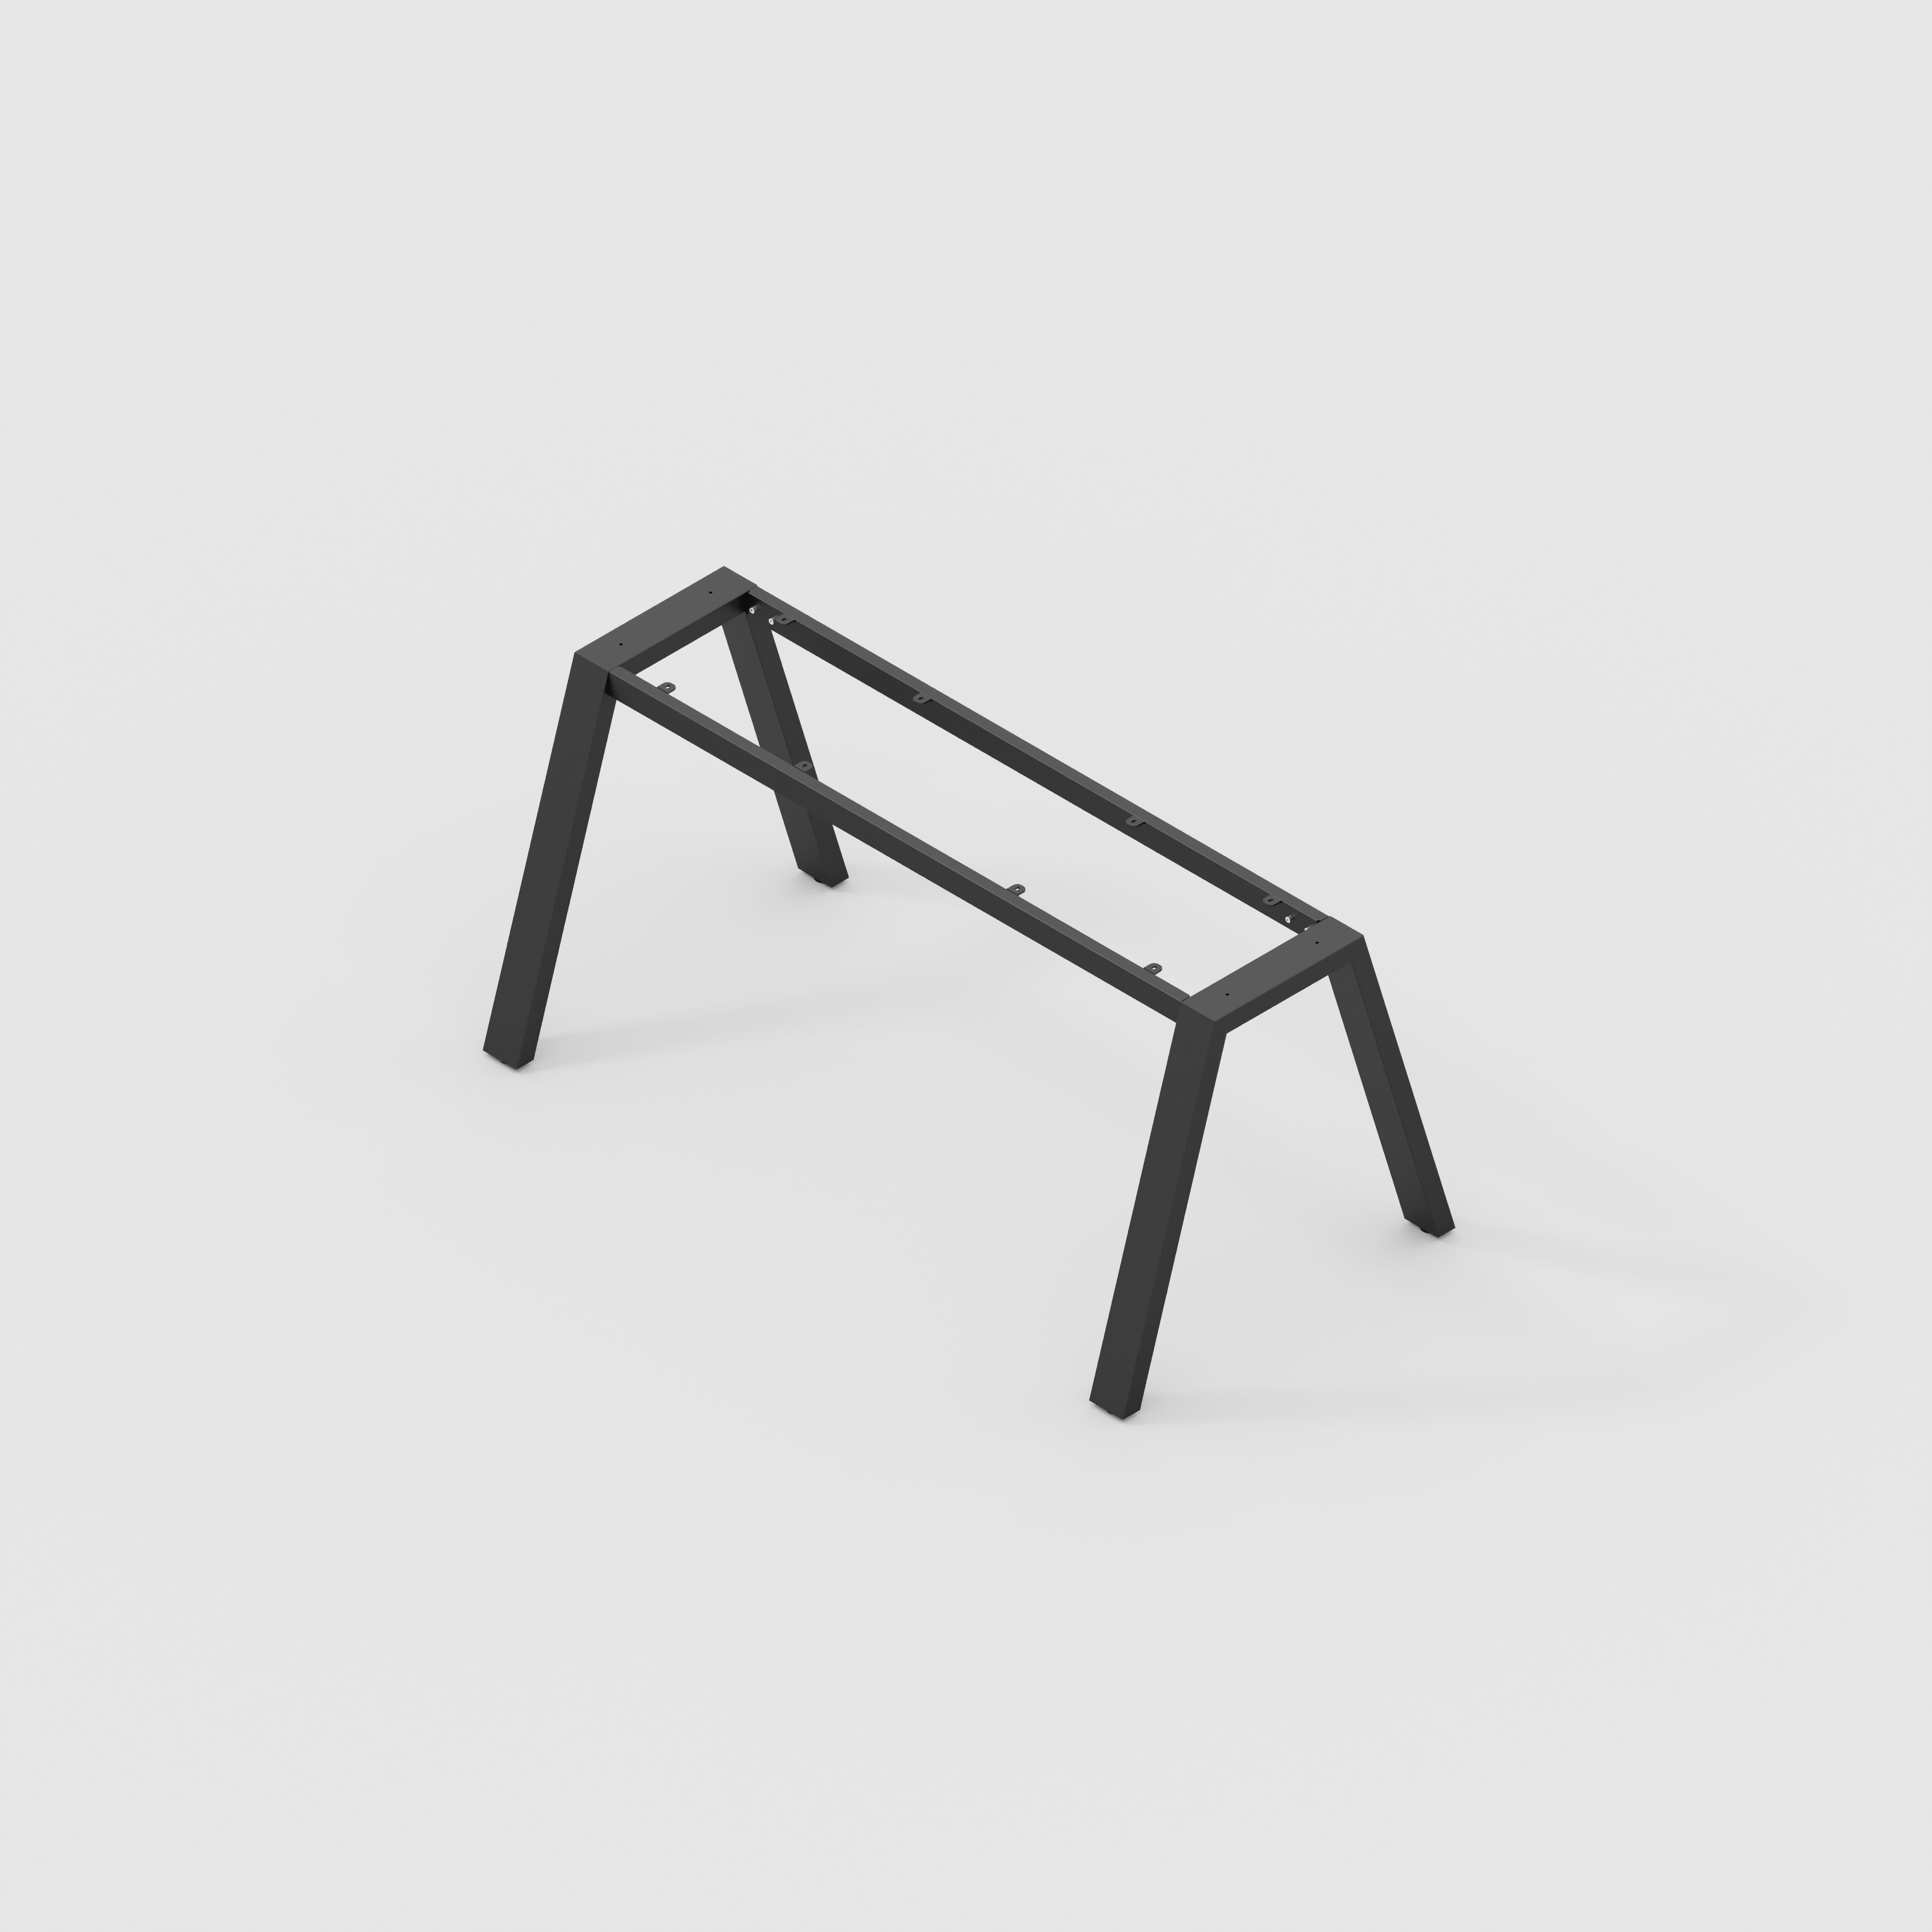 Desk/Table Legs - Quad Frame